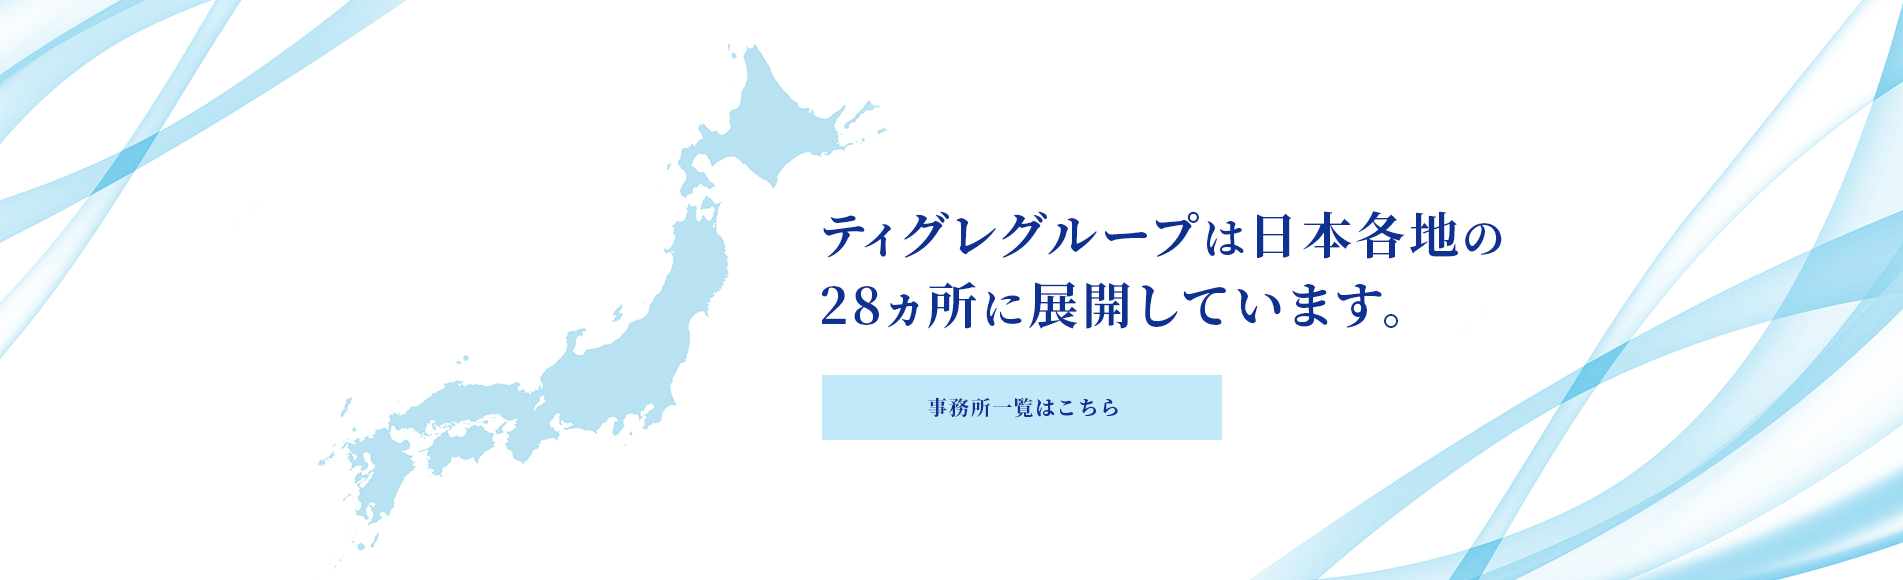 ティグレグループは日本各地の28ヵ所に展開しています。